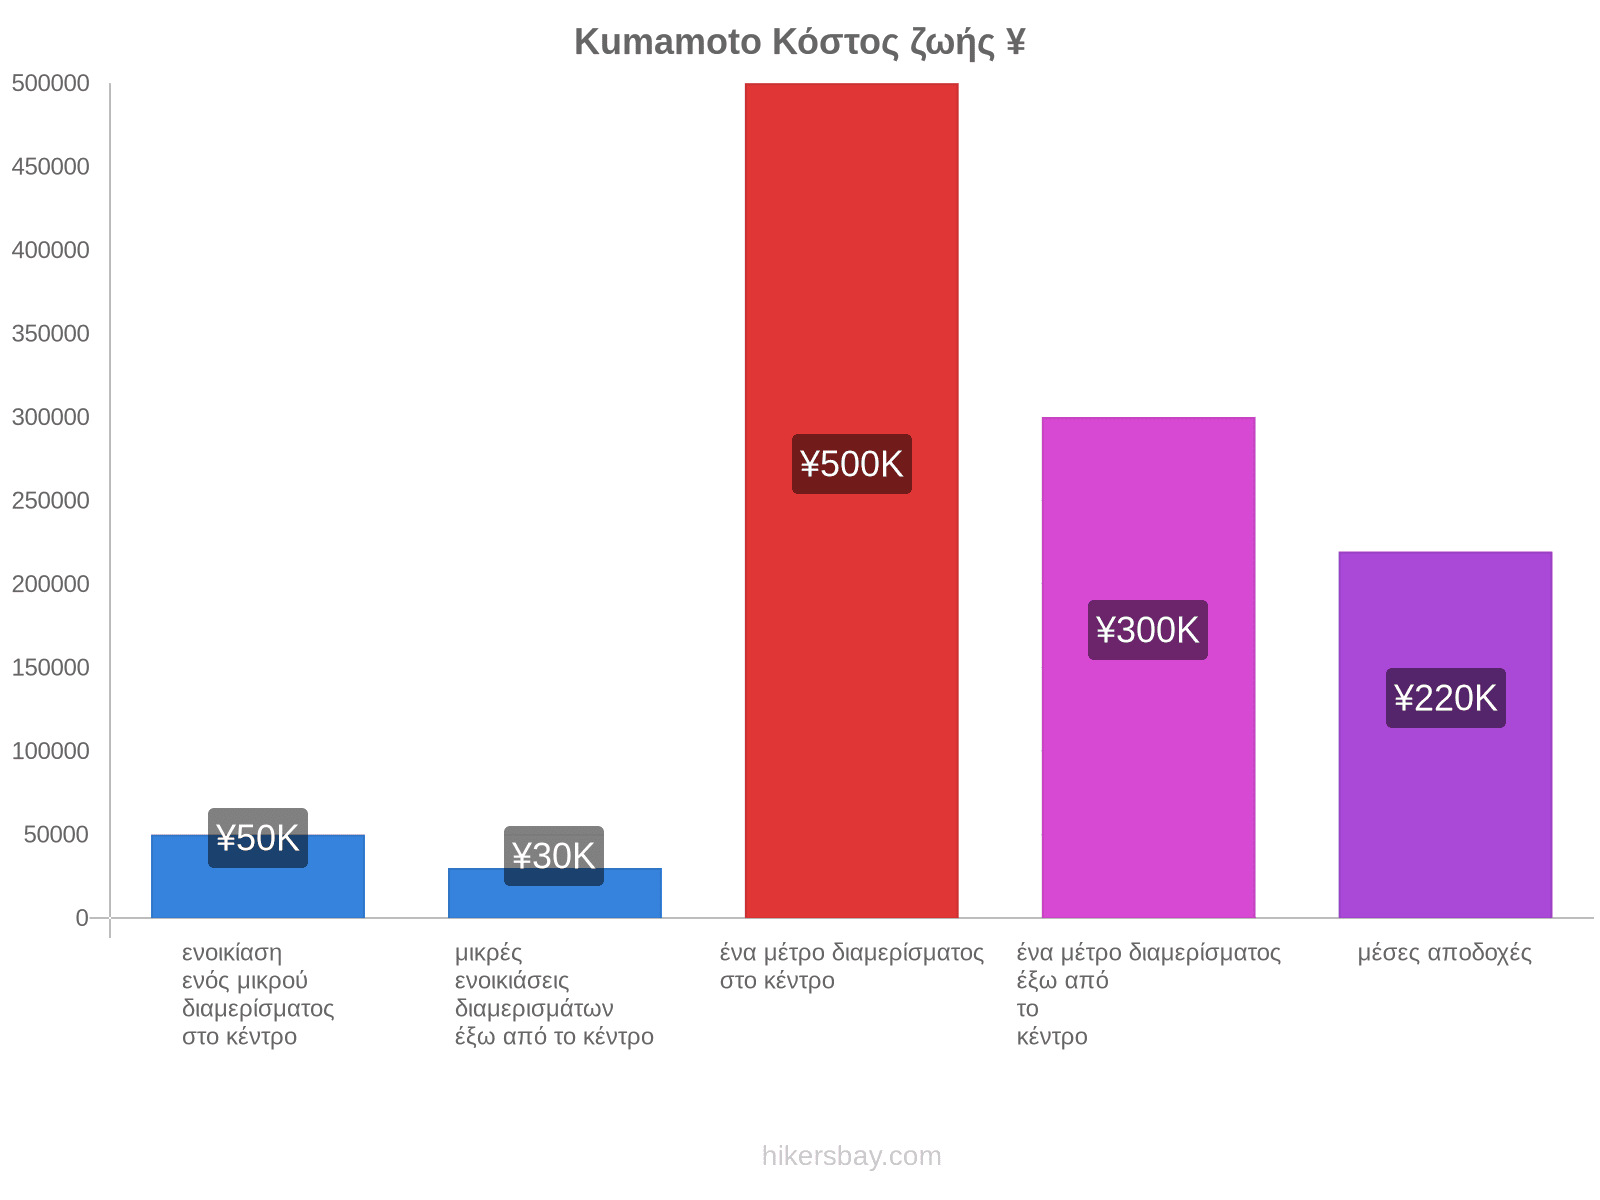 Kumamoto κόστος ζωής hikersbay.com